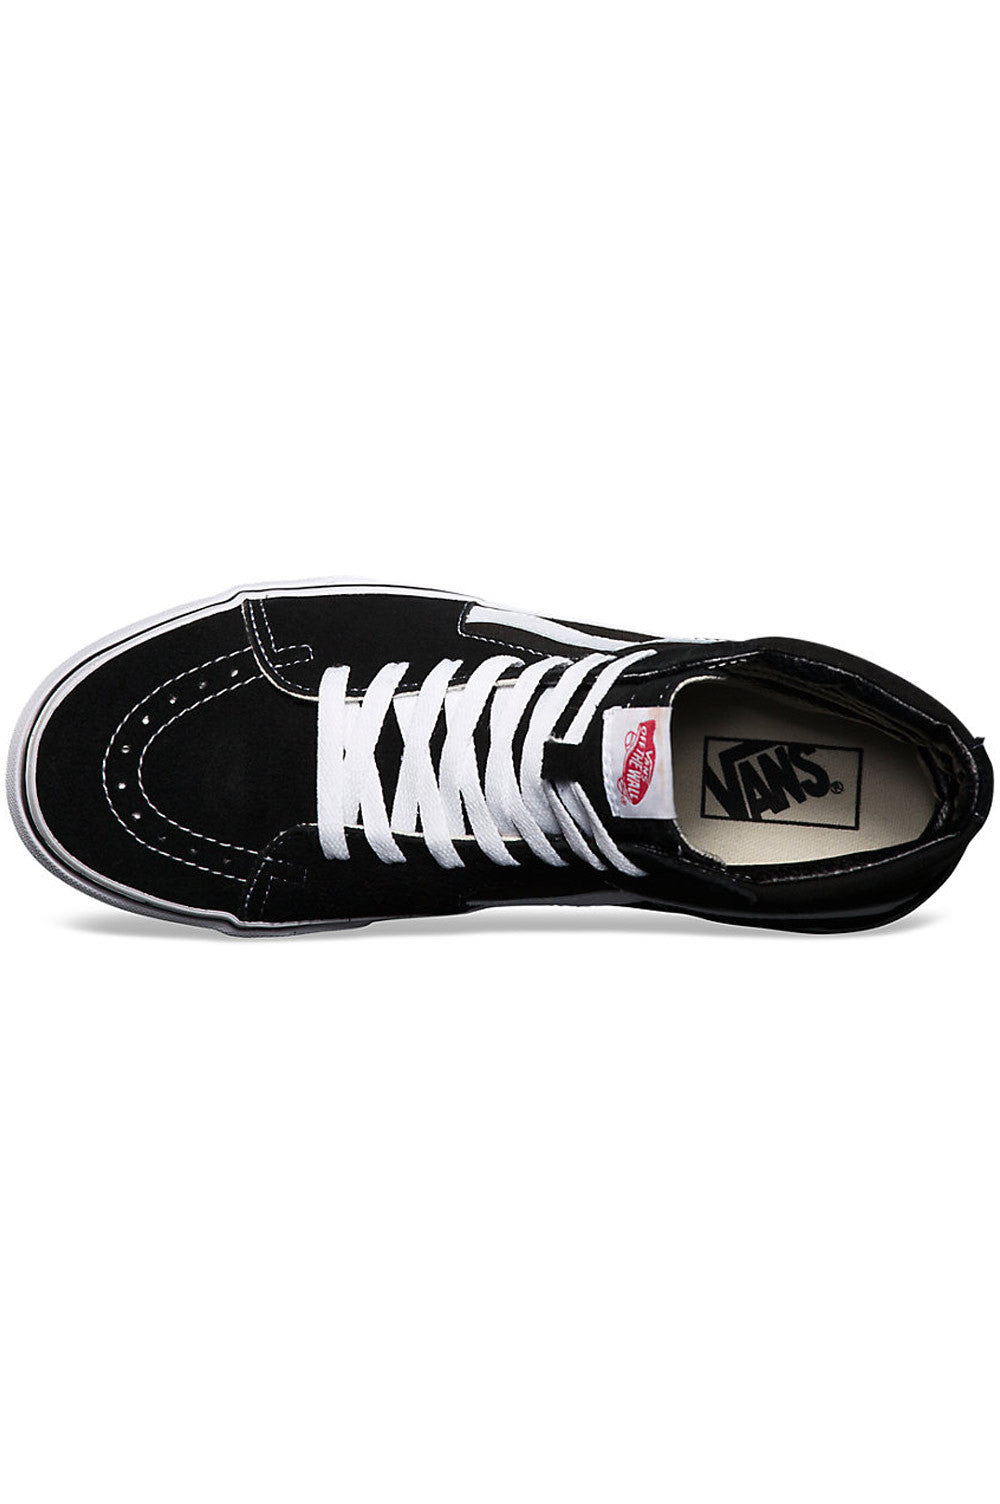 Vans SK8-Hi sneakers in black